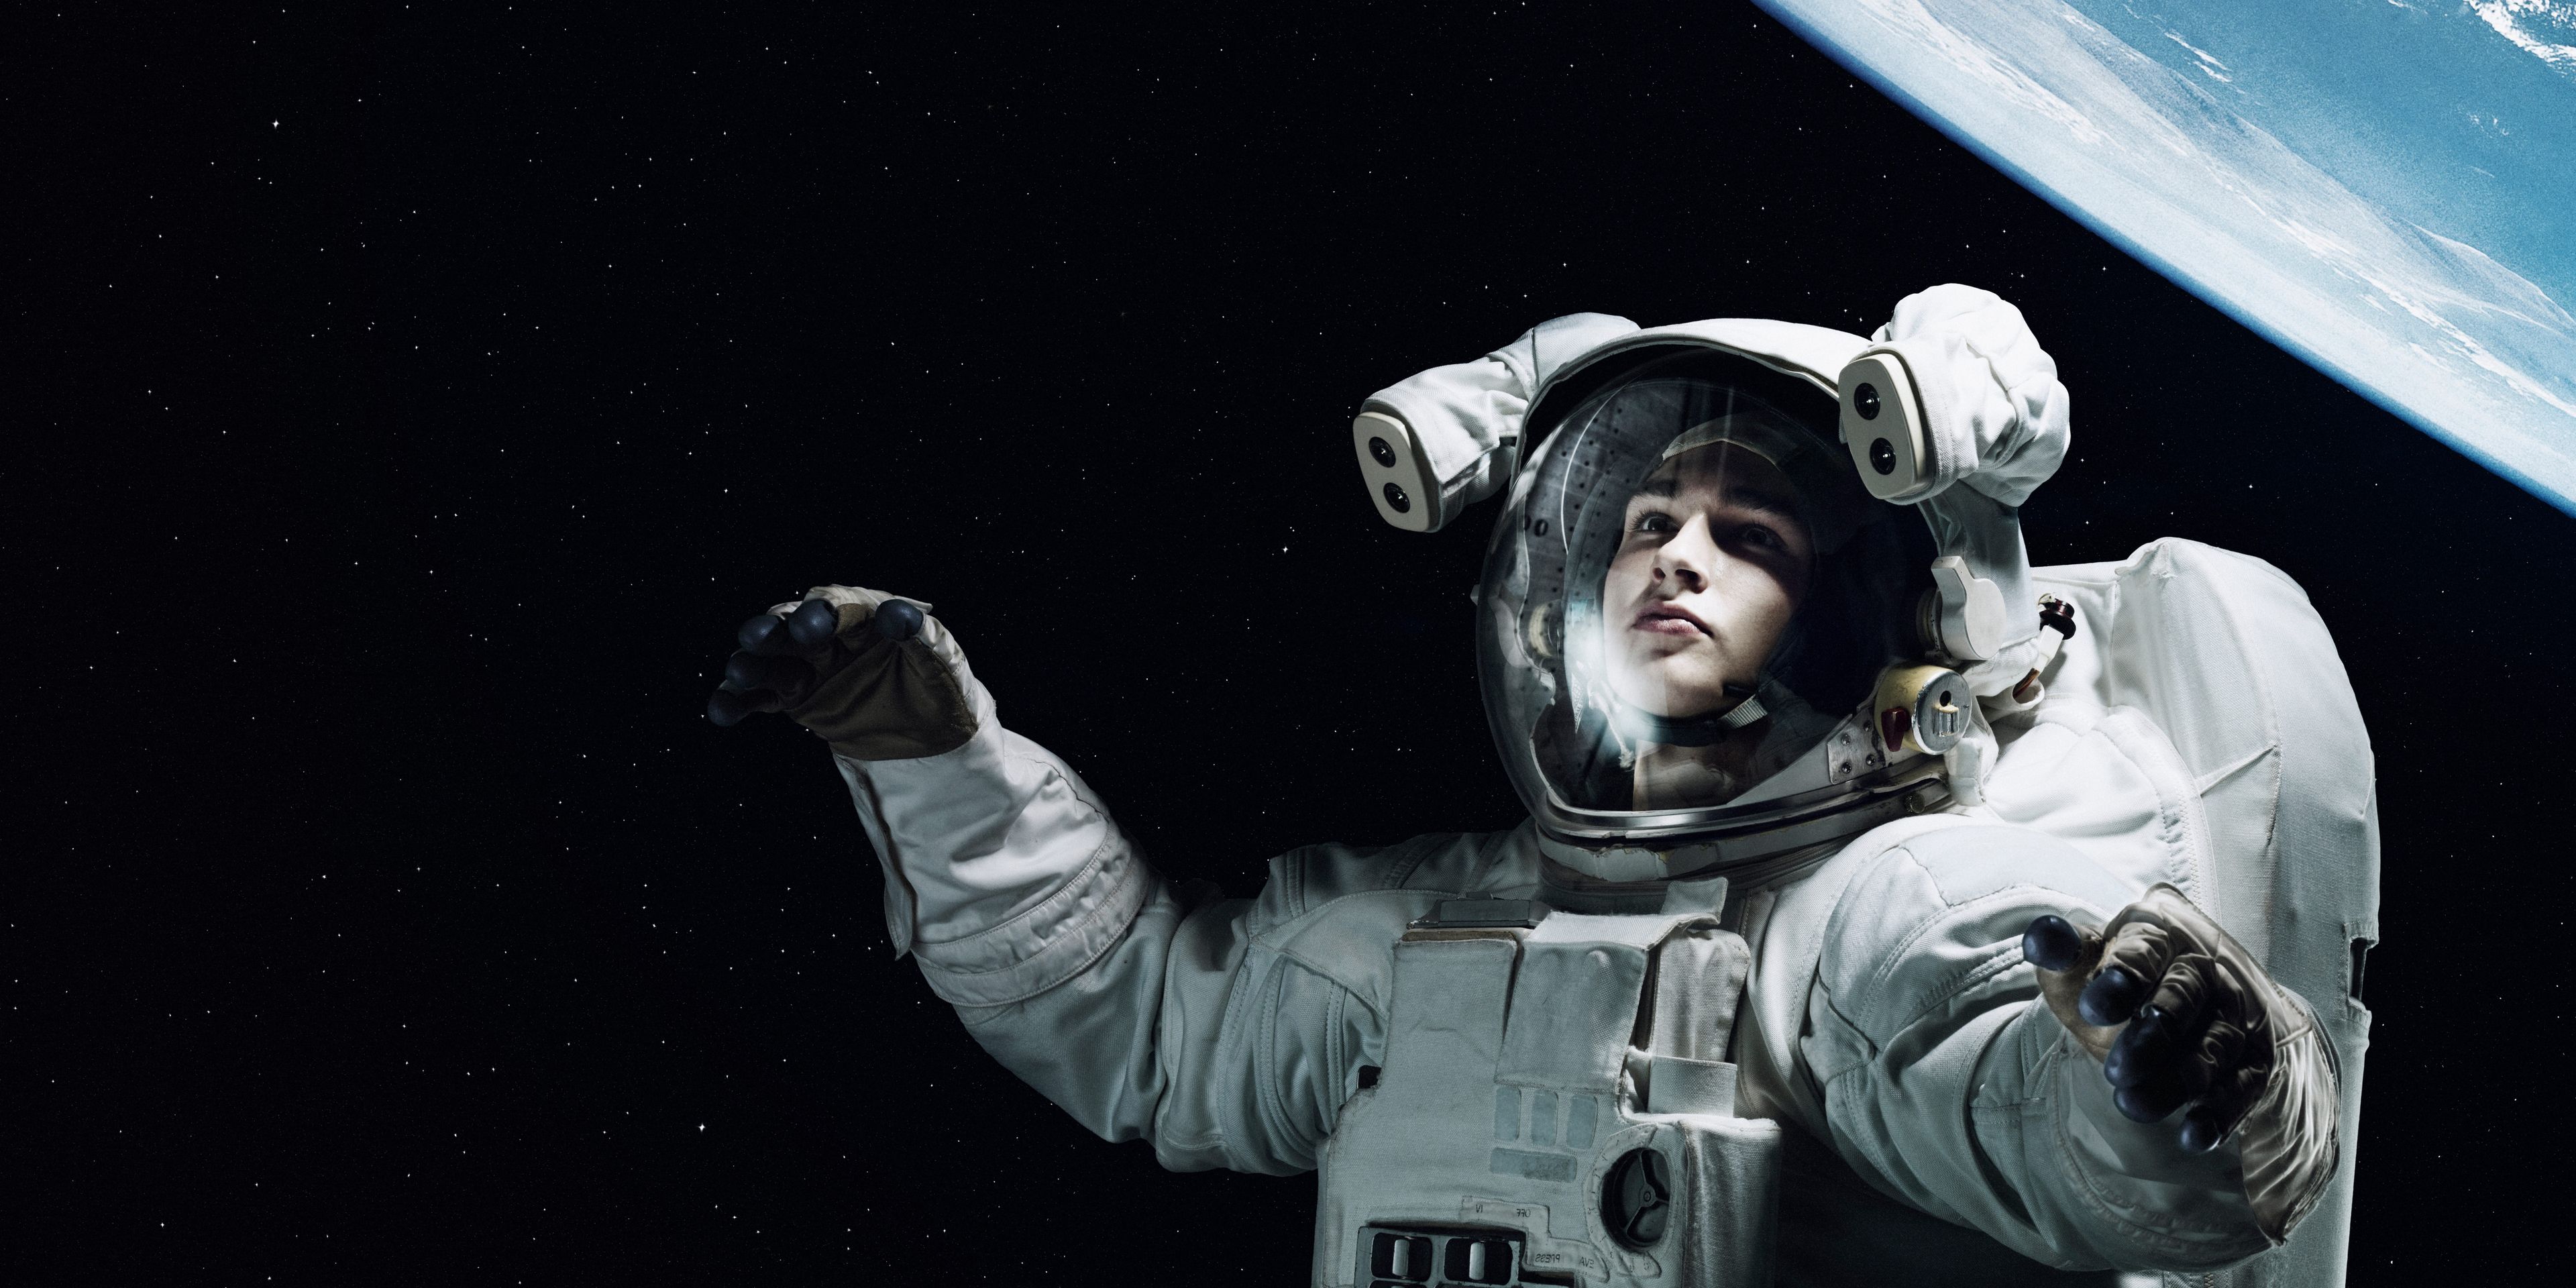 Un saco de dormir podría evitar que los globos oculares de los astronautas se aplasten en el espacio, según un estudio publicado por la BBC.